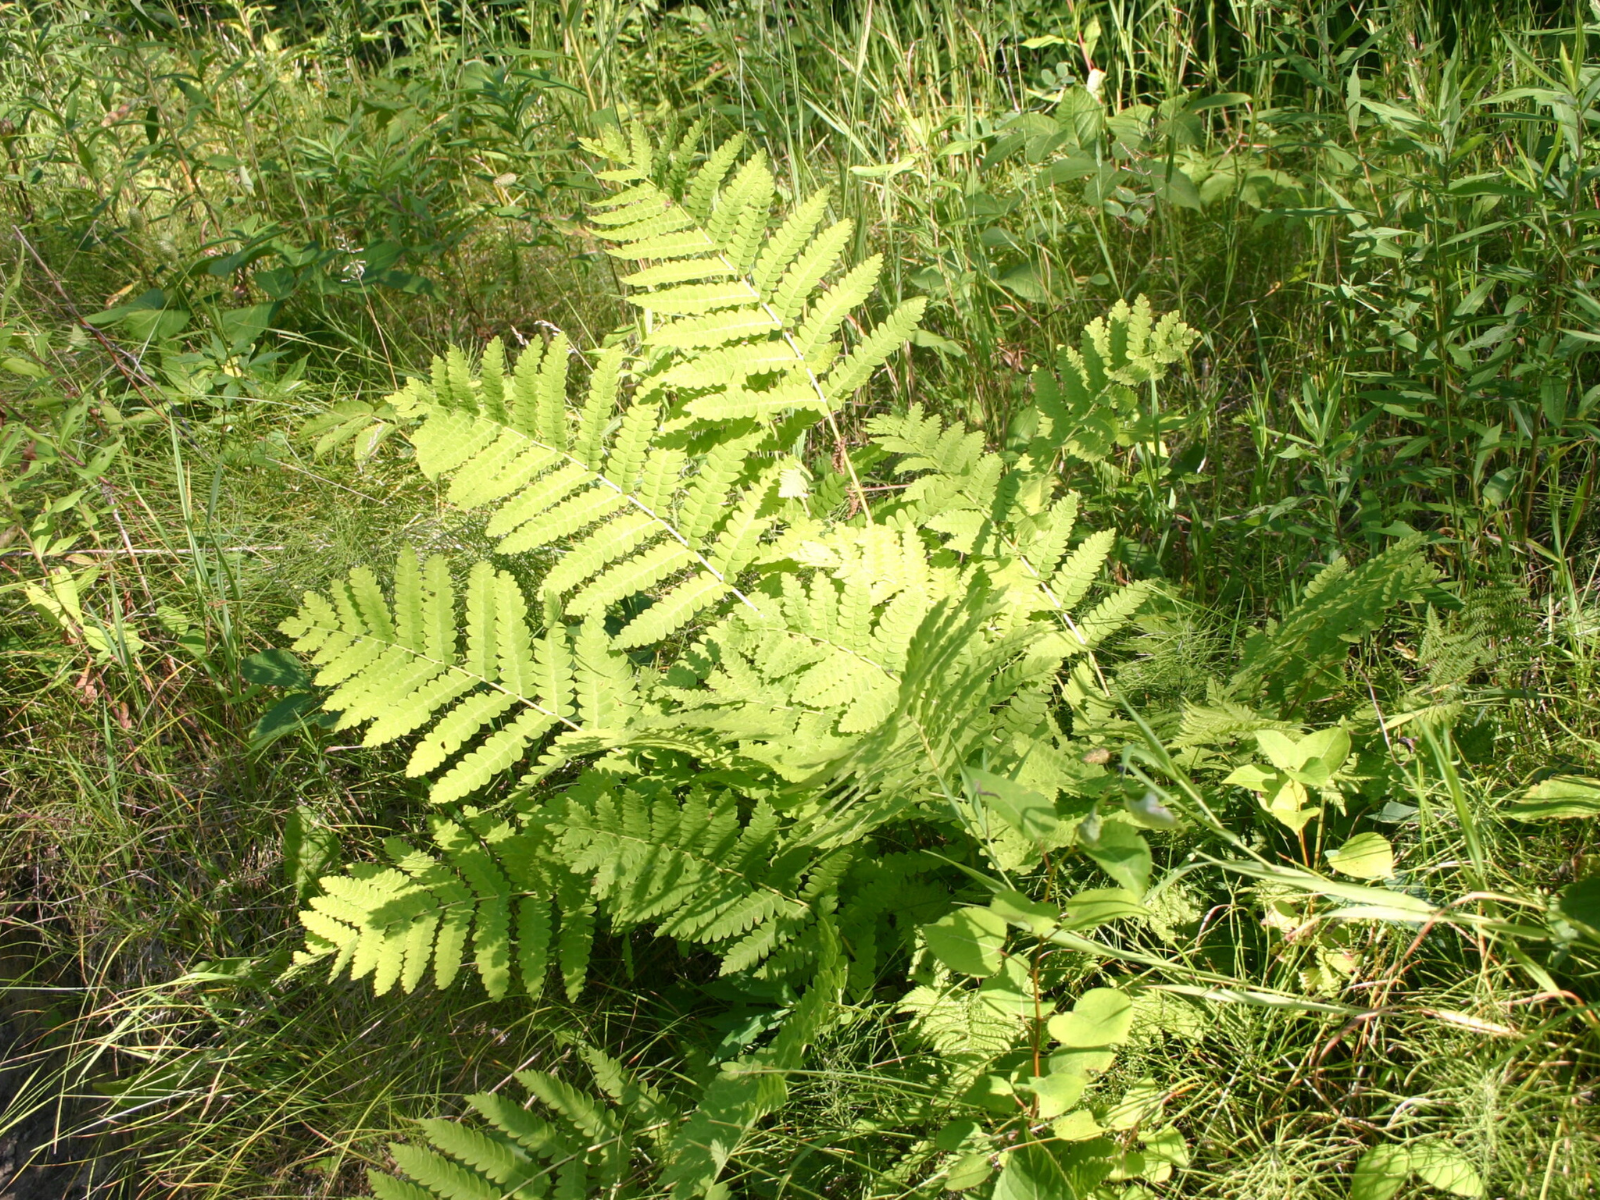 A light-green fern growing in the grass.